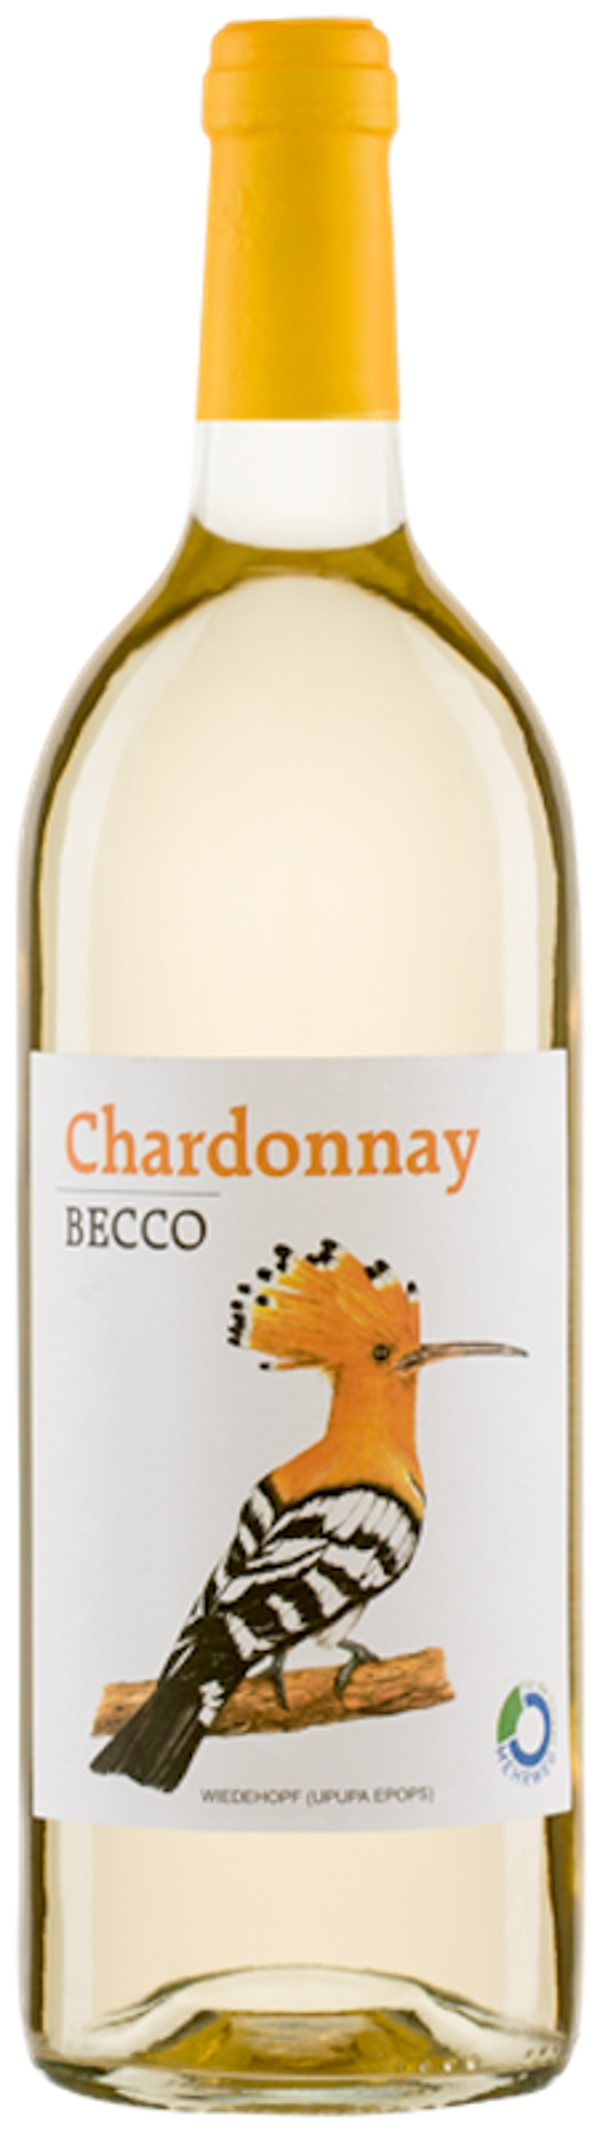 Produktfoto zu BECCO Chardonnay 1l Mehrweg